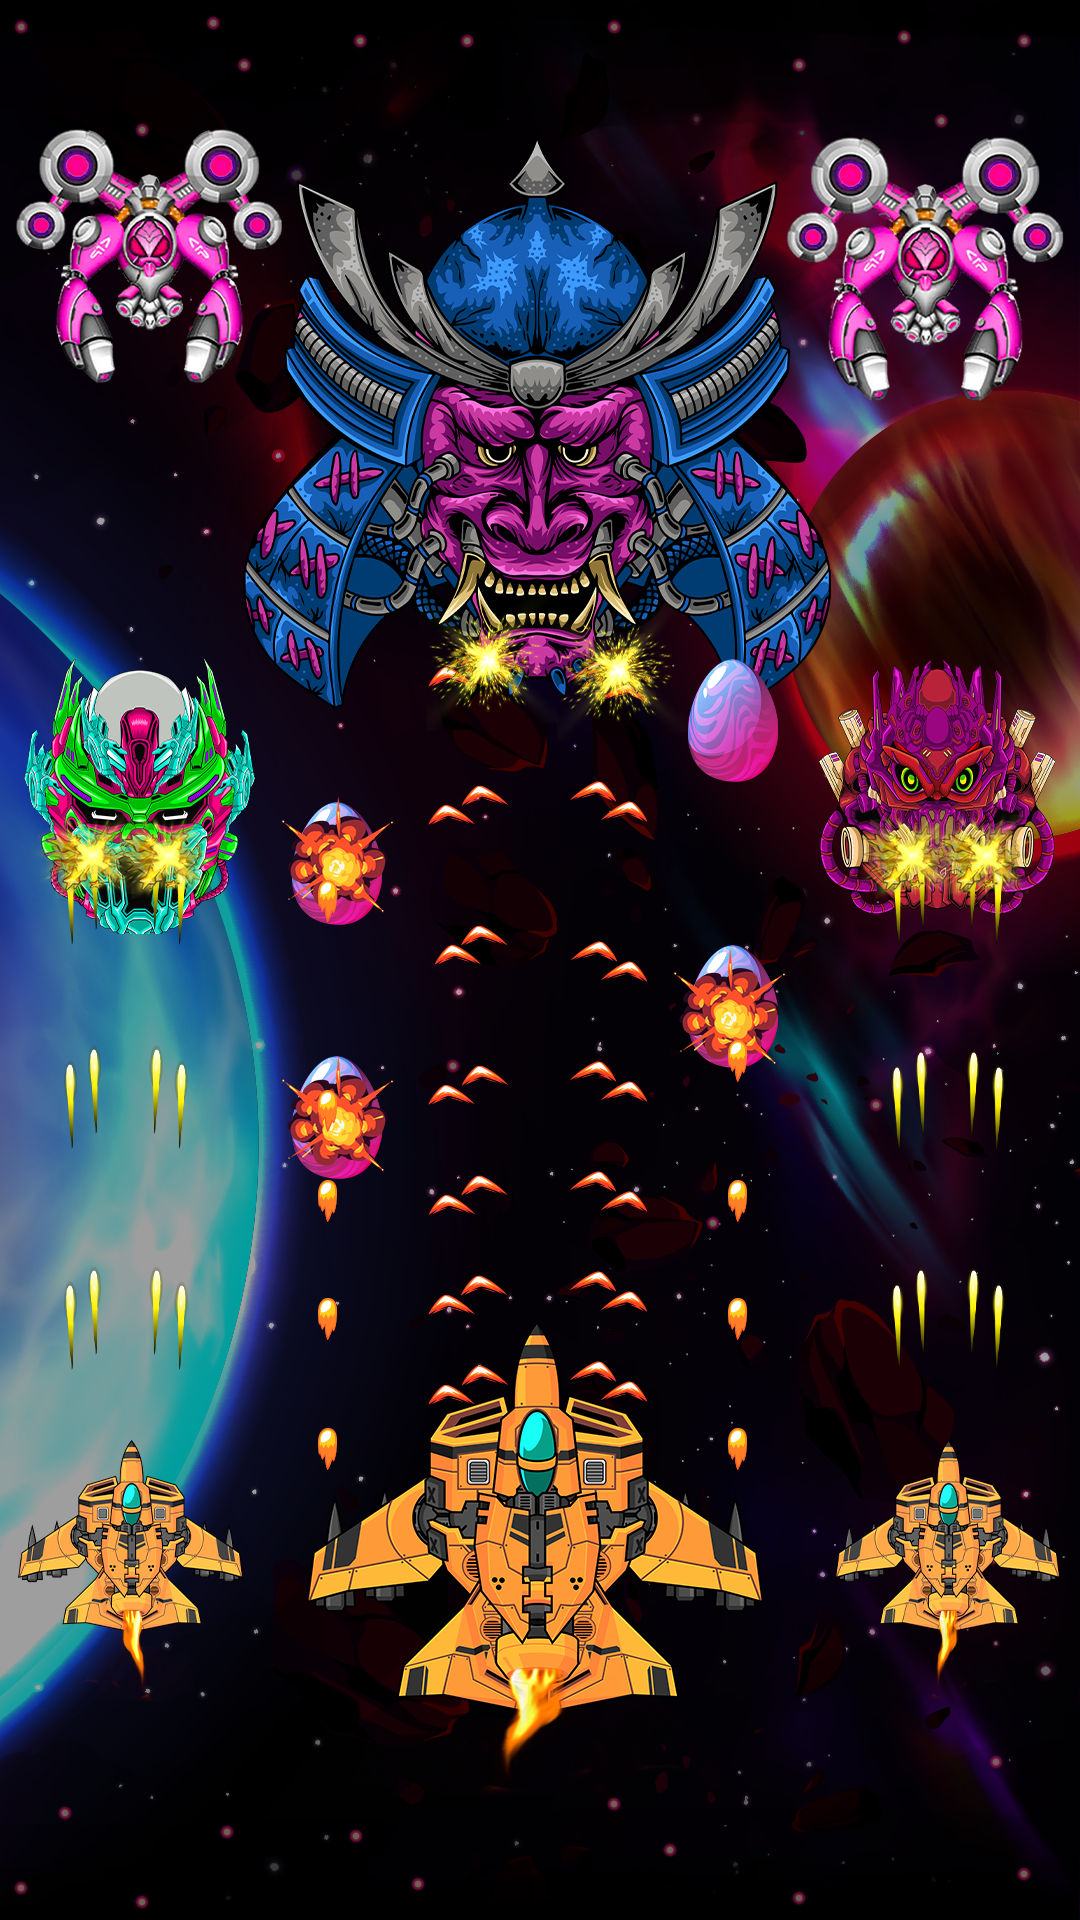 Screenshot 1 of Trò chơi chiến tranh không gian Alien Shooter 2.9